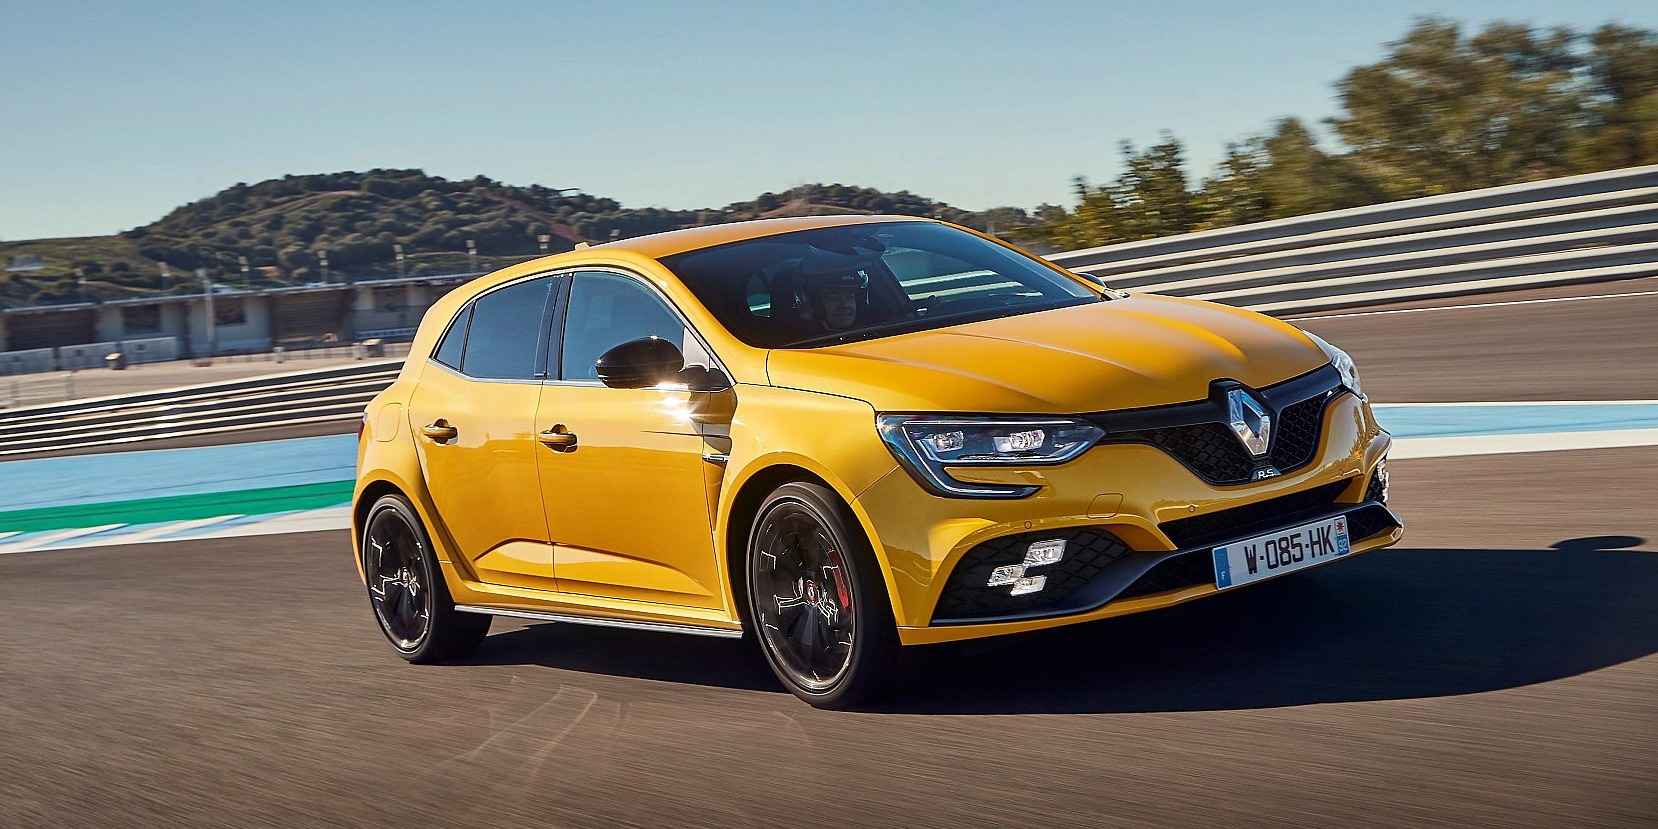 Renault Mégane R.S. 2018 Test: Bilder & Infos zu Preis, Daten, Motor